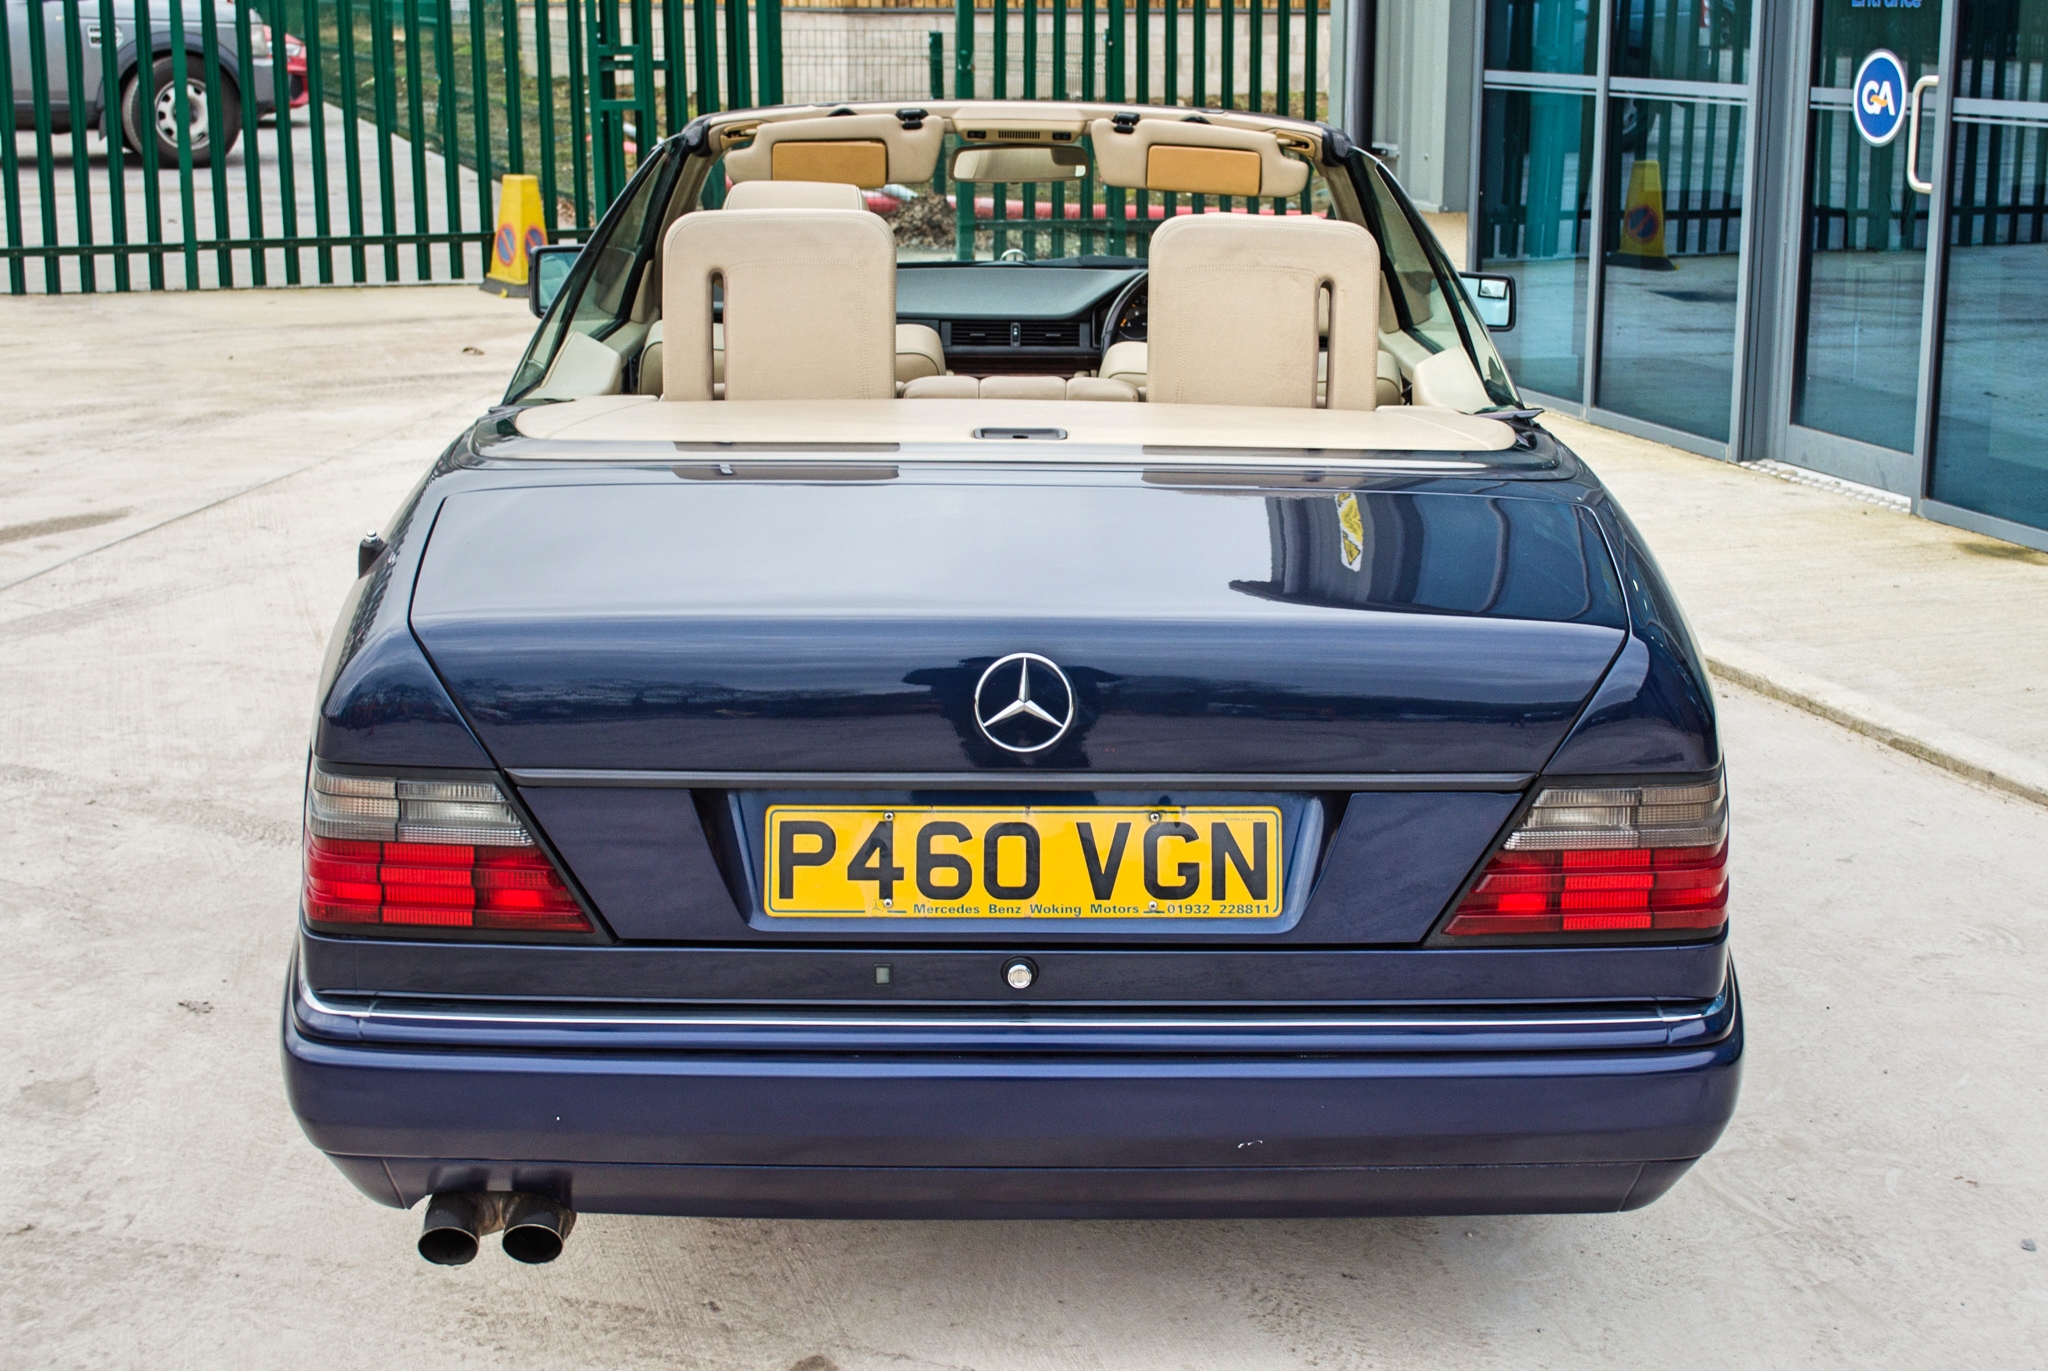 1997 Mercedes E220 2.2 litre 2 door cabriolet Registration: P460VGN Chassis: WDB1240622C292059 - Image 12 of 60